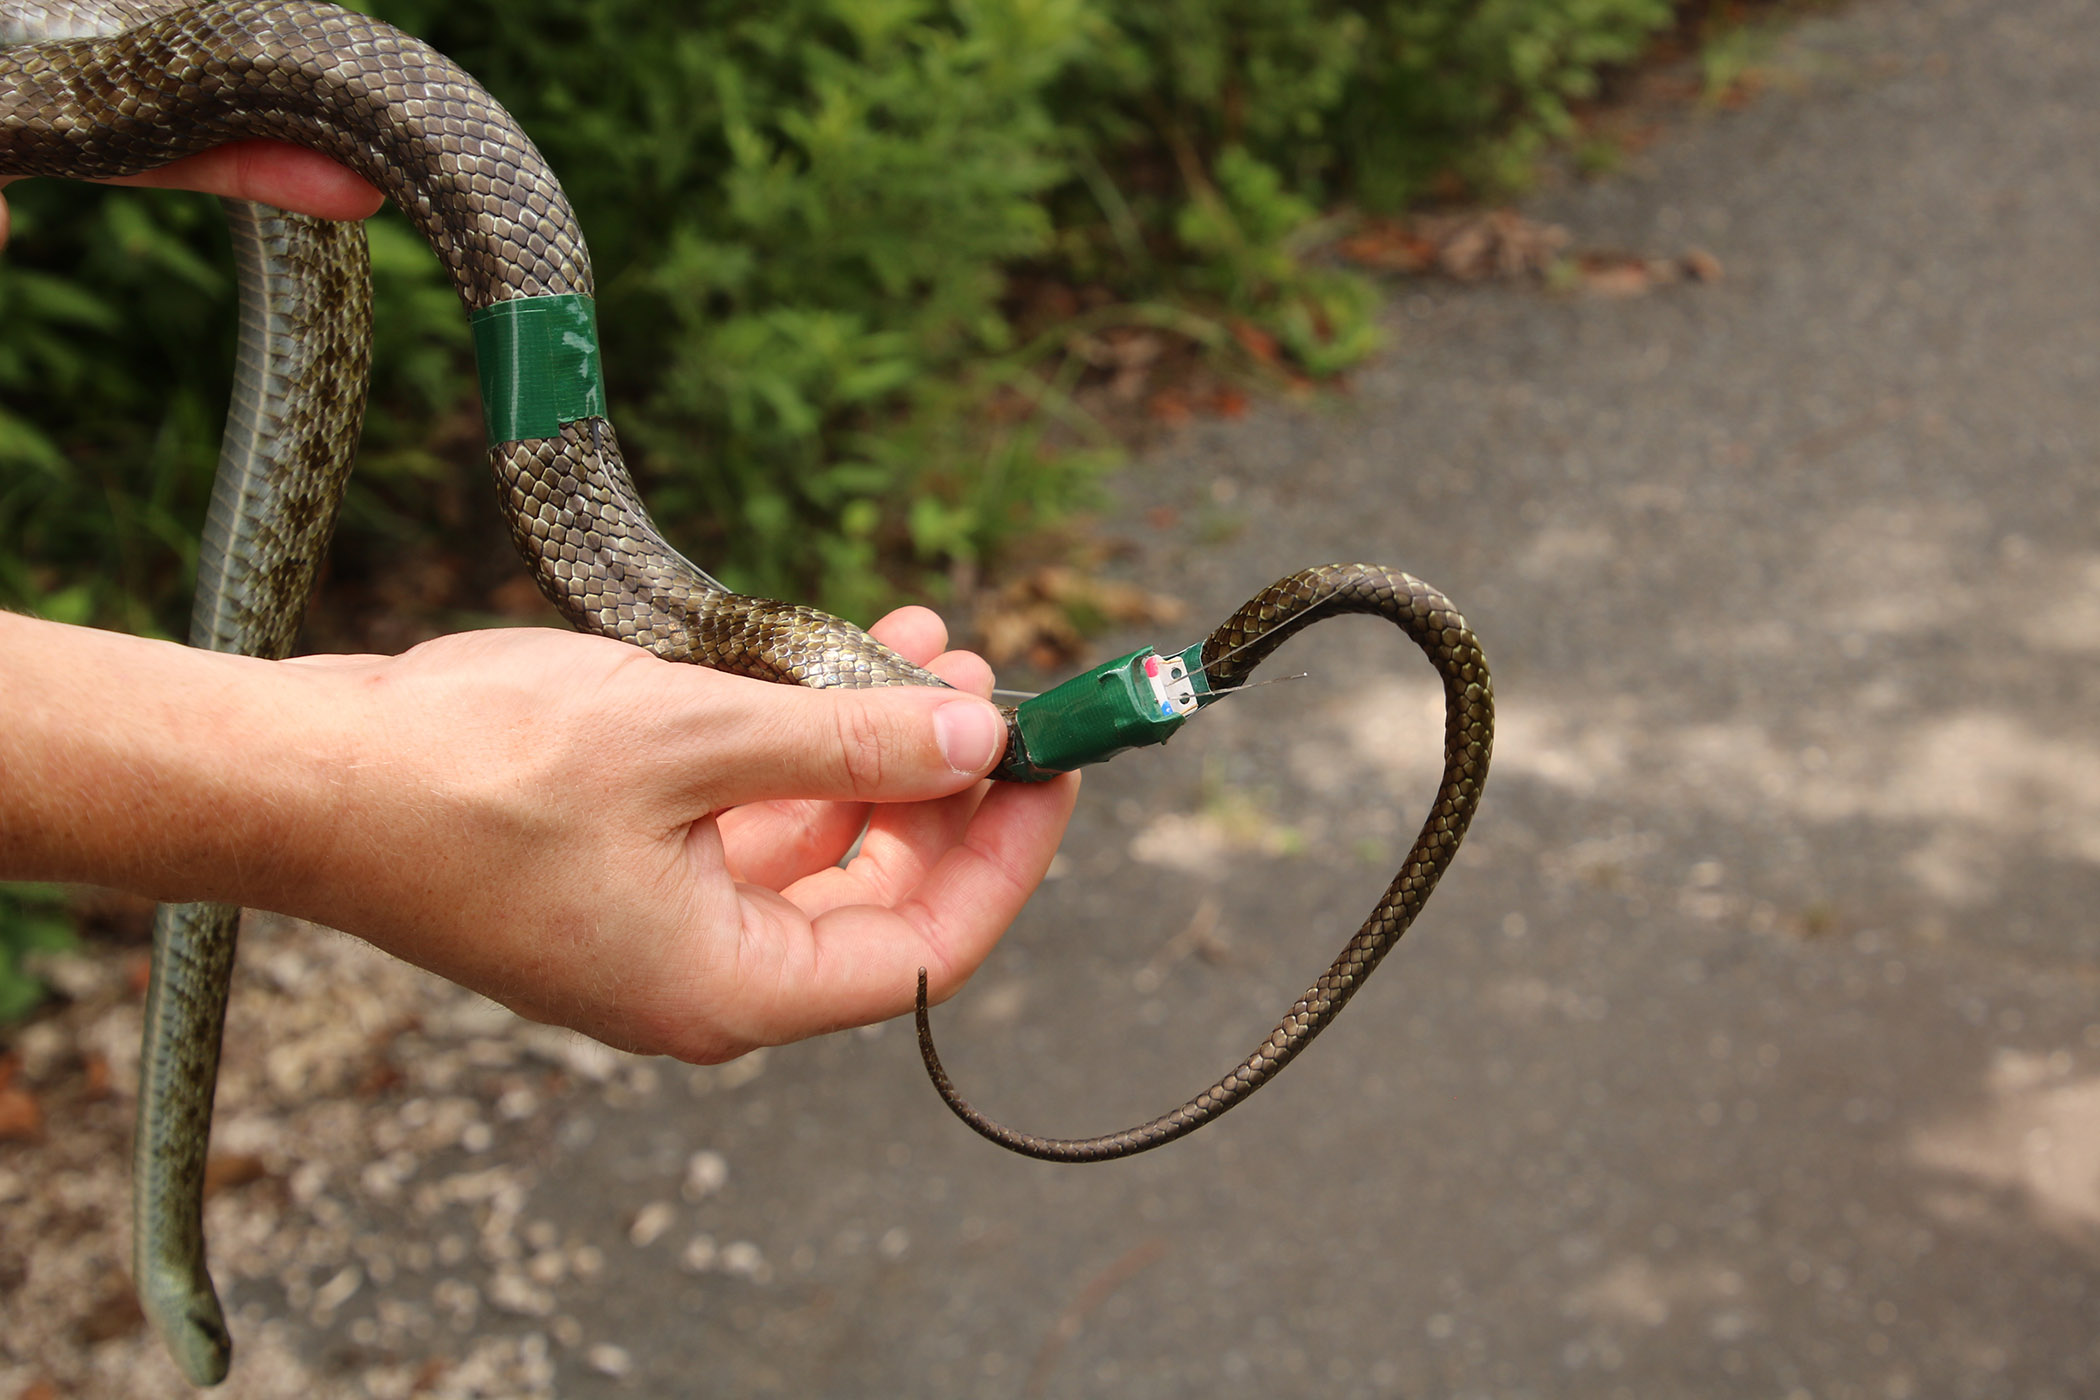 Досліджувана змія з&amp;nbsp;GPS-передатчиком на хвості. Hannah Gerke /&amp;nbsp;University of Georgia